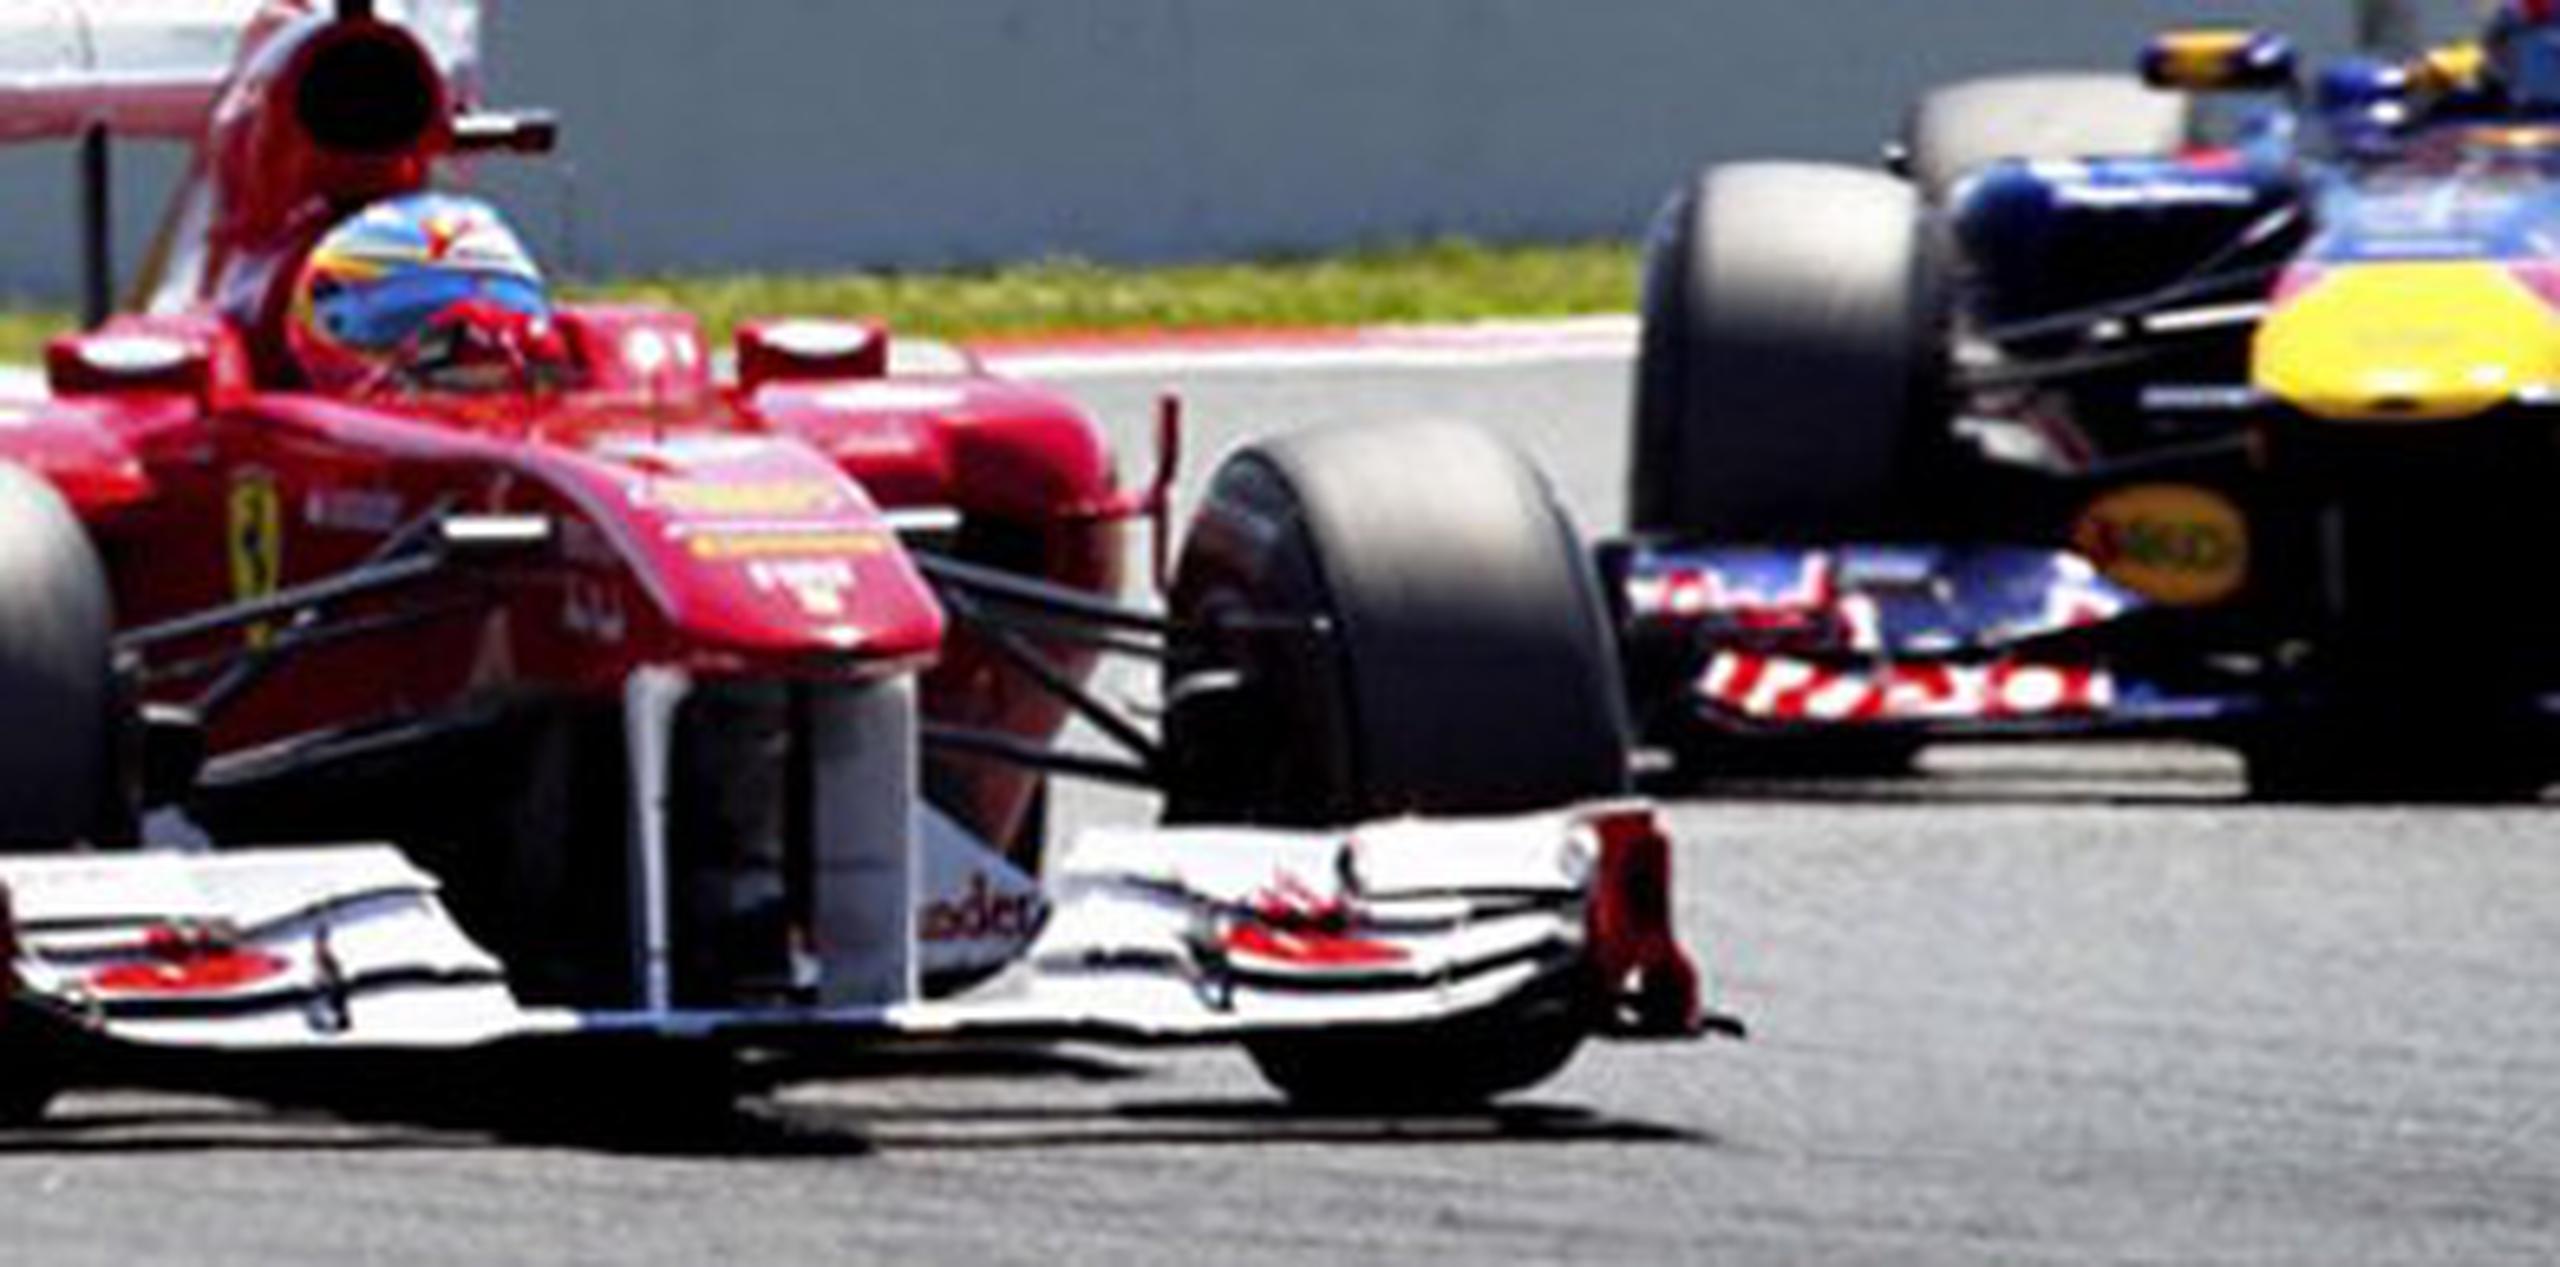 Las nuevas reglas de la Federación Internacional de Automovilismo, que pretenden dificultar la presencia de pilotos sin experiencia en el escenario más importante, siguieron a la decisión del equipo Toro Rosso de contratar al conductor Max Verstappen, de 17 años, para la competencia de este año. (Archivo)